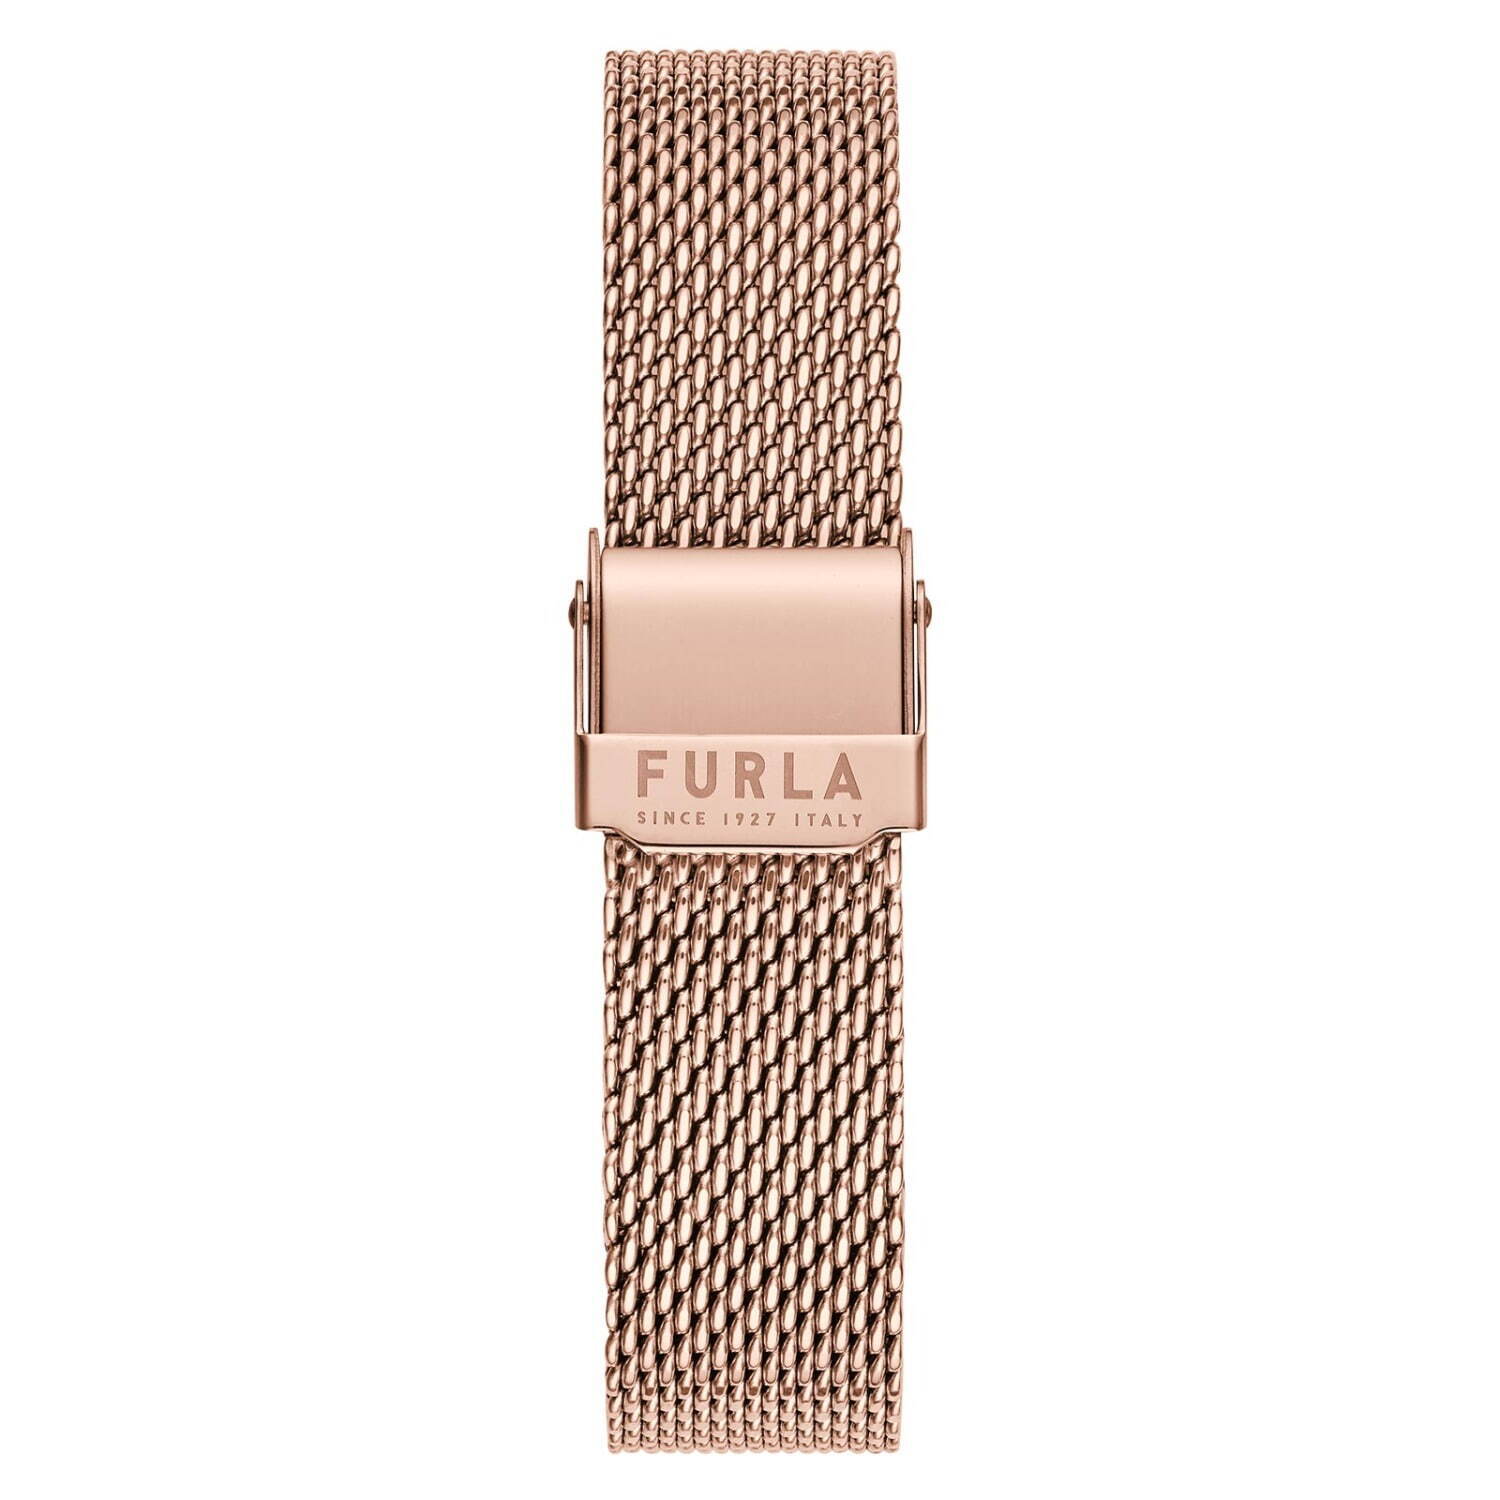 フルラ新作腕時計「フルラ バゲット シェイプ」長方形ケース×天然石調 